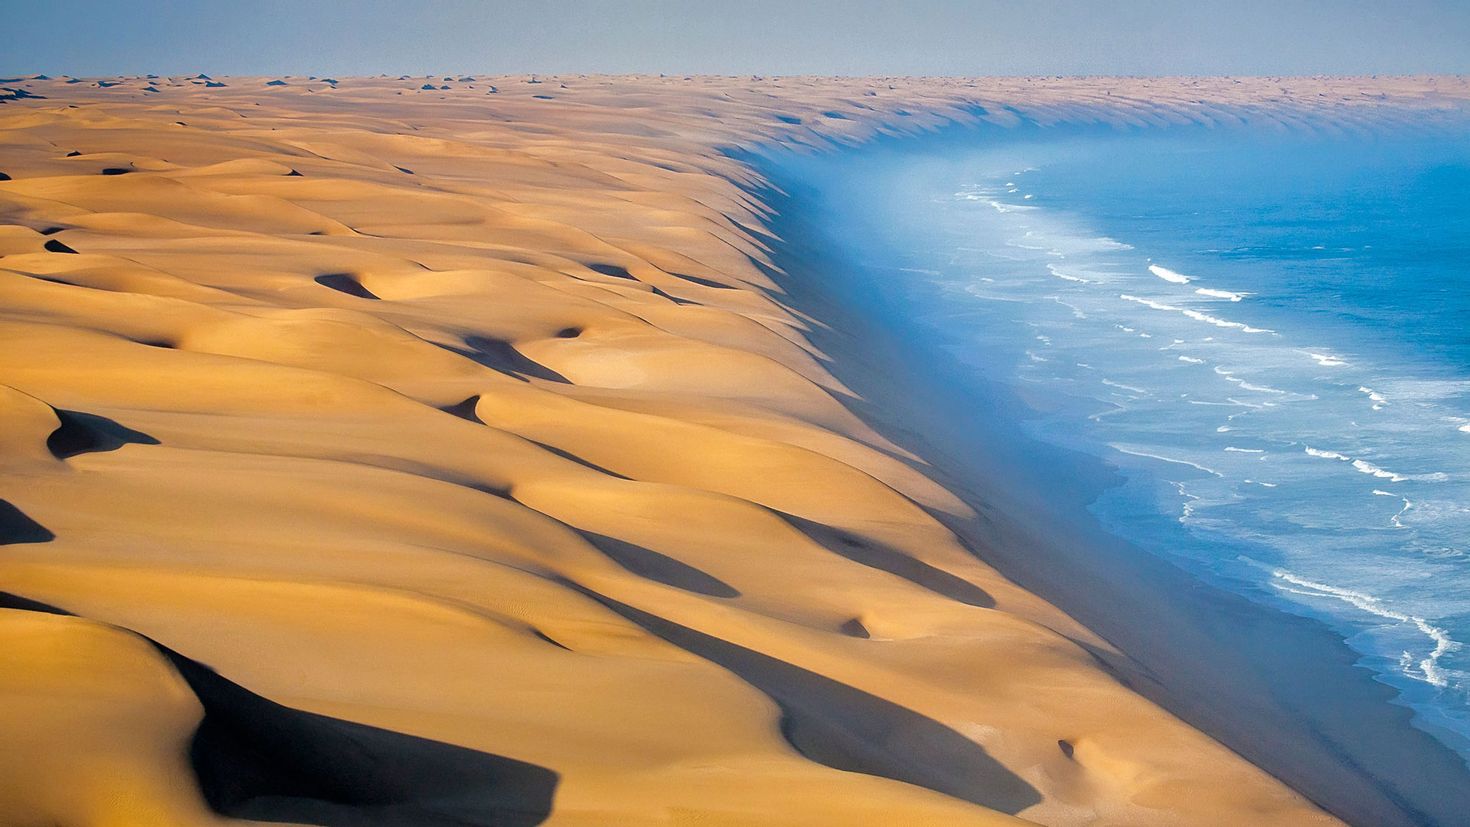 Море на сотни миль вокруг казалось пустынным. Намибия пустыня Намиб. Пустыня Намиб и Атлантический океан. Пустыня Намиб и Атлантический океан Намибия. Намиб пустыни Африки.